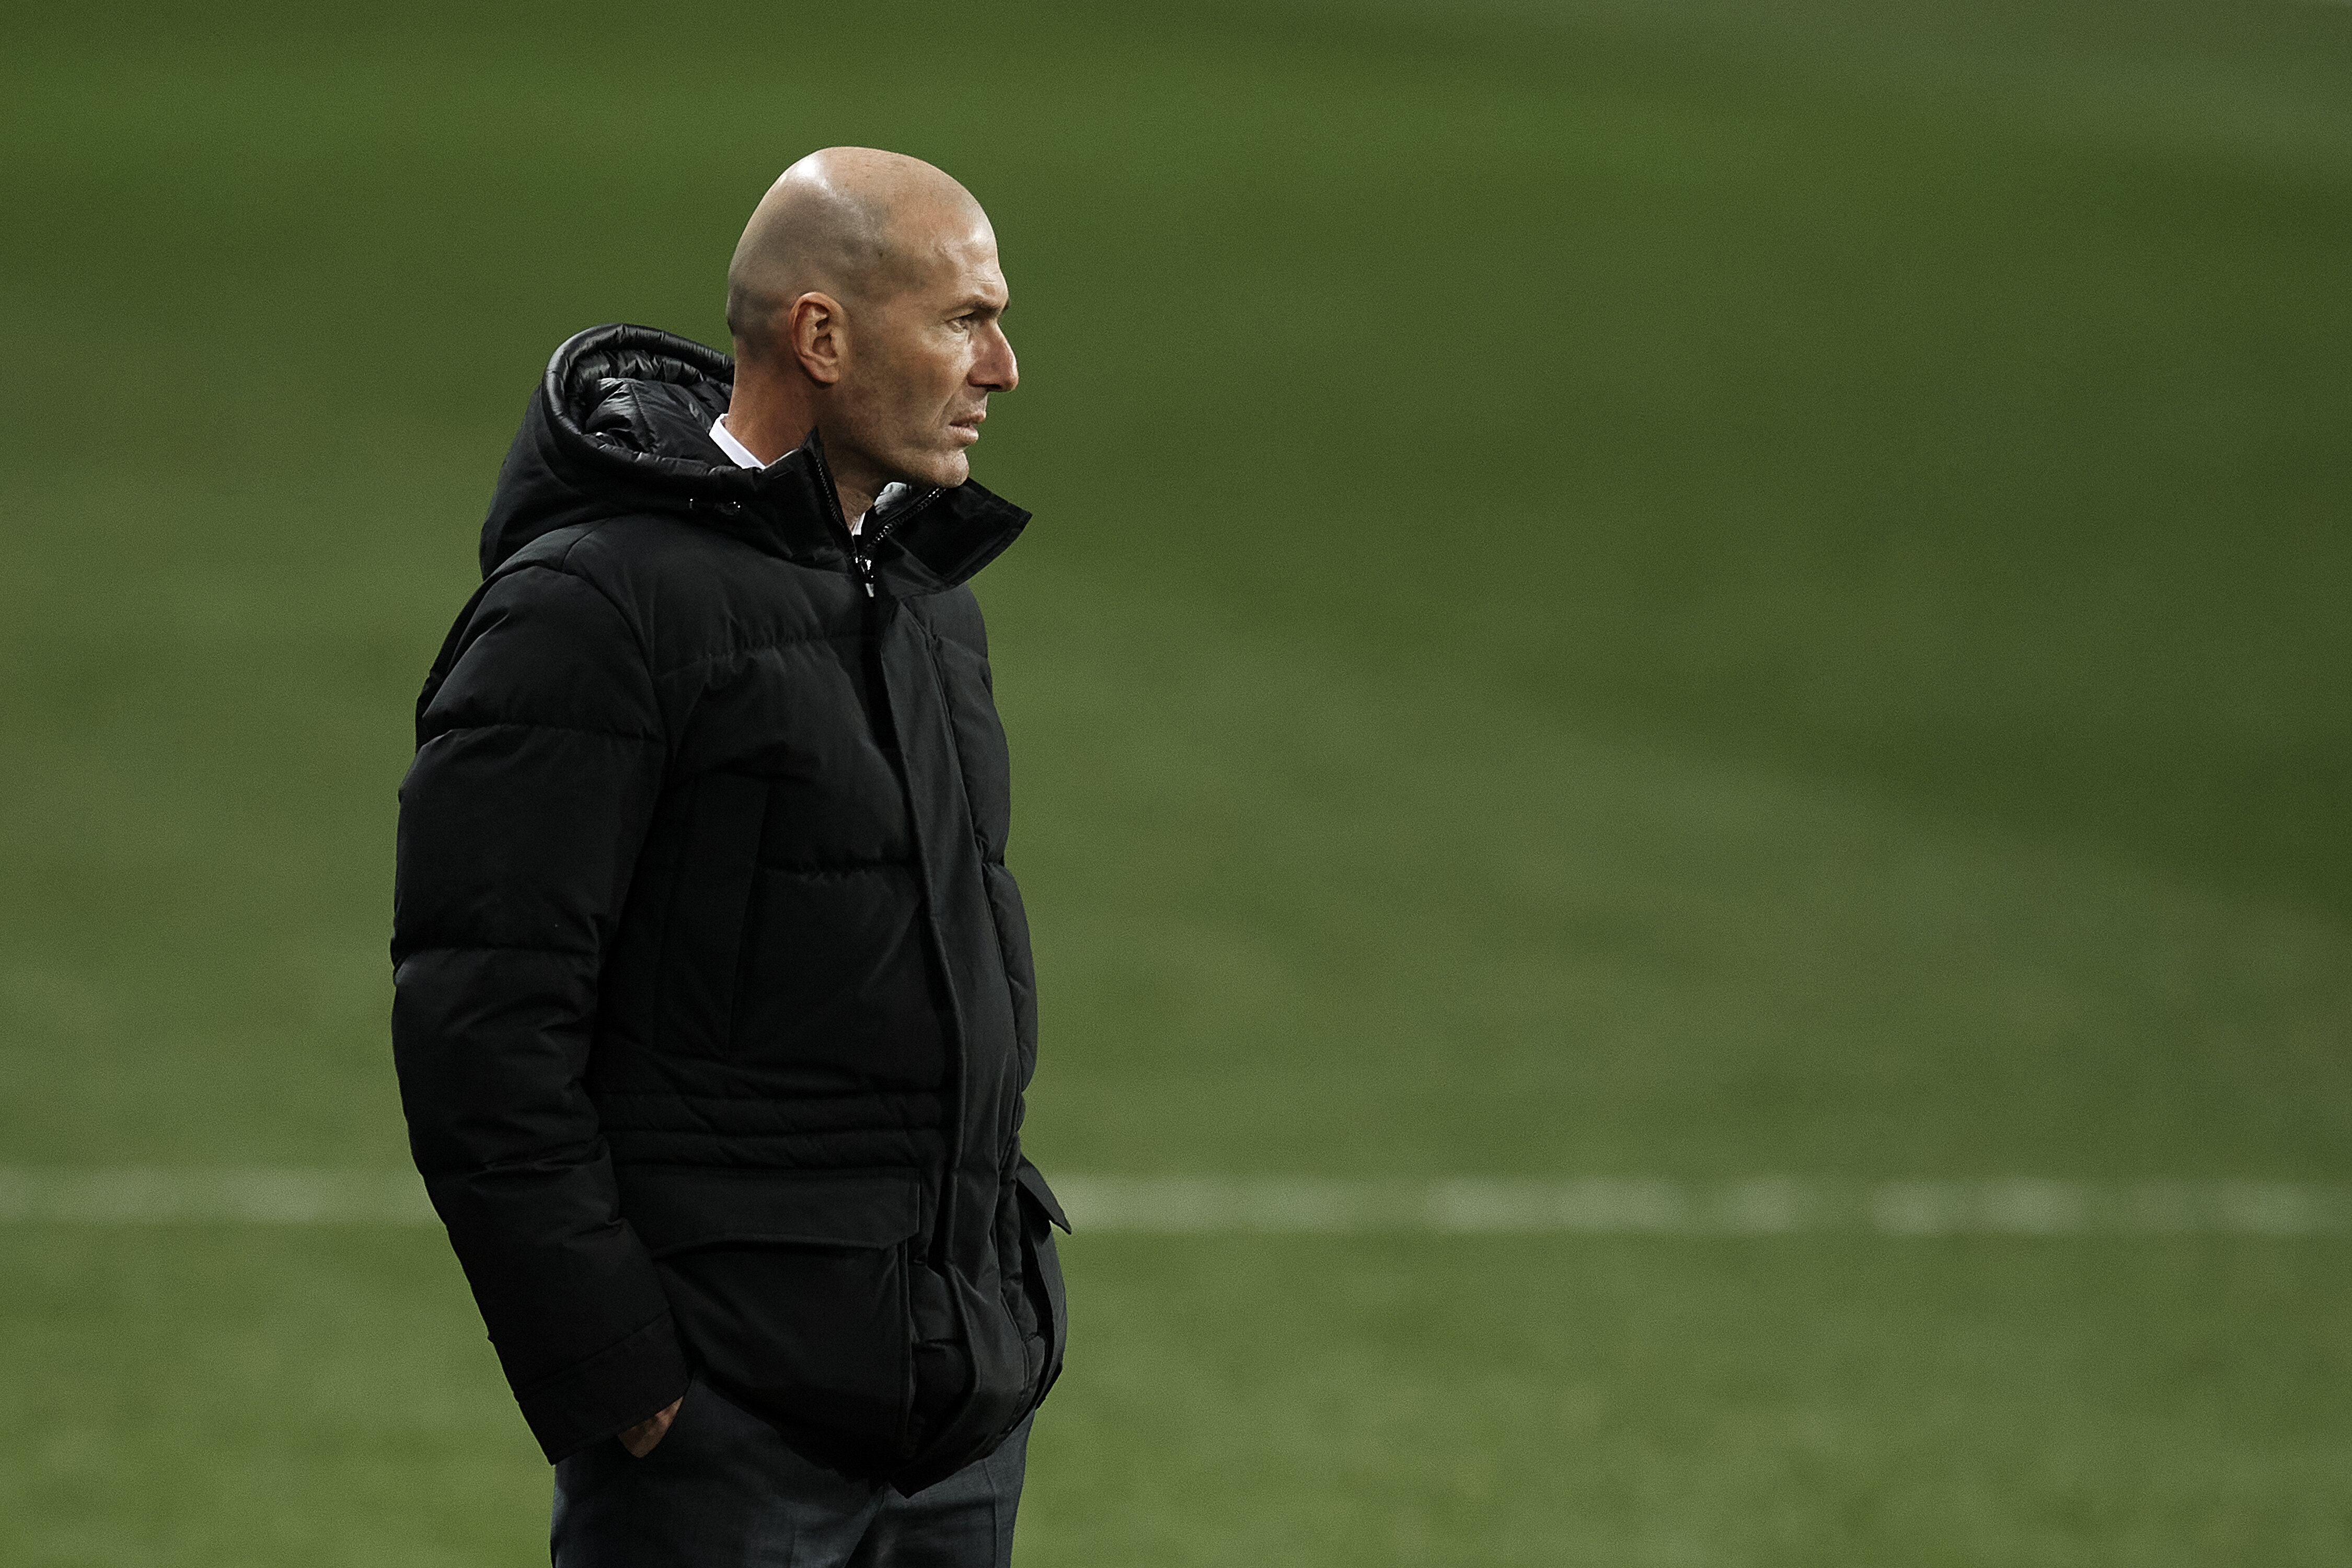 Zidane testé positif au covid-19